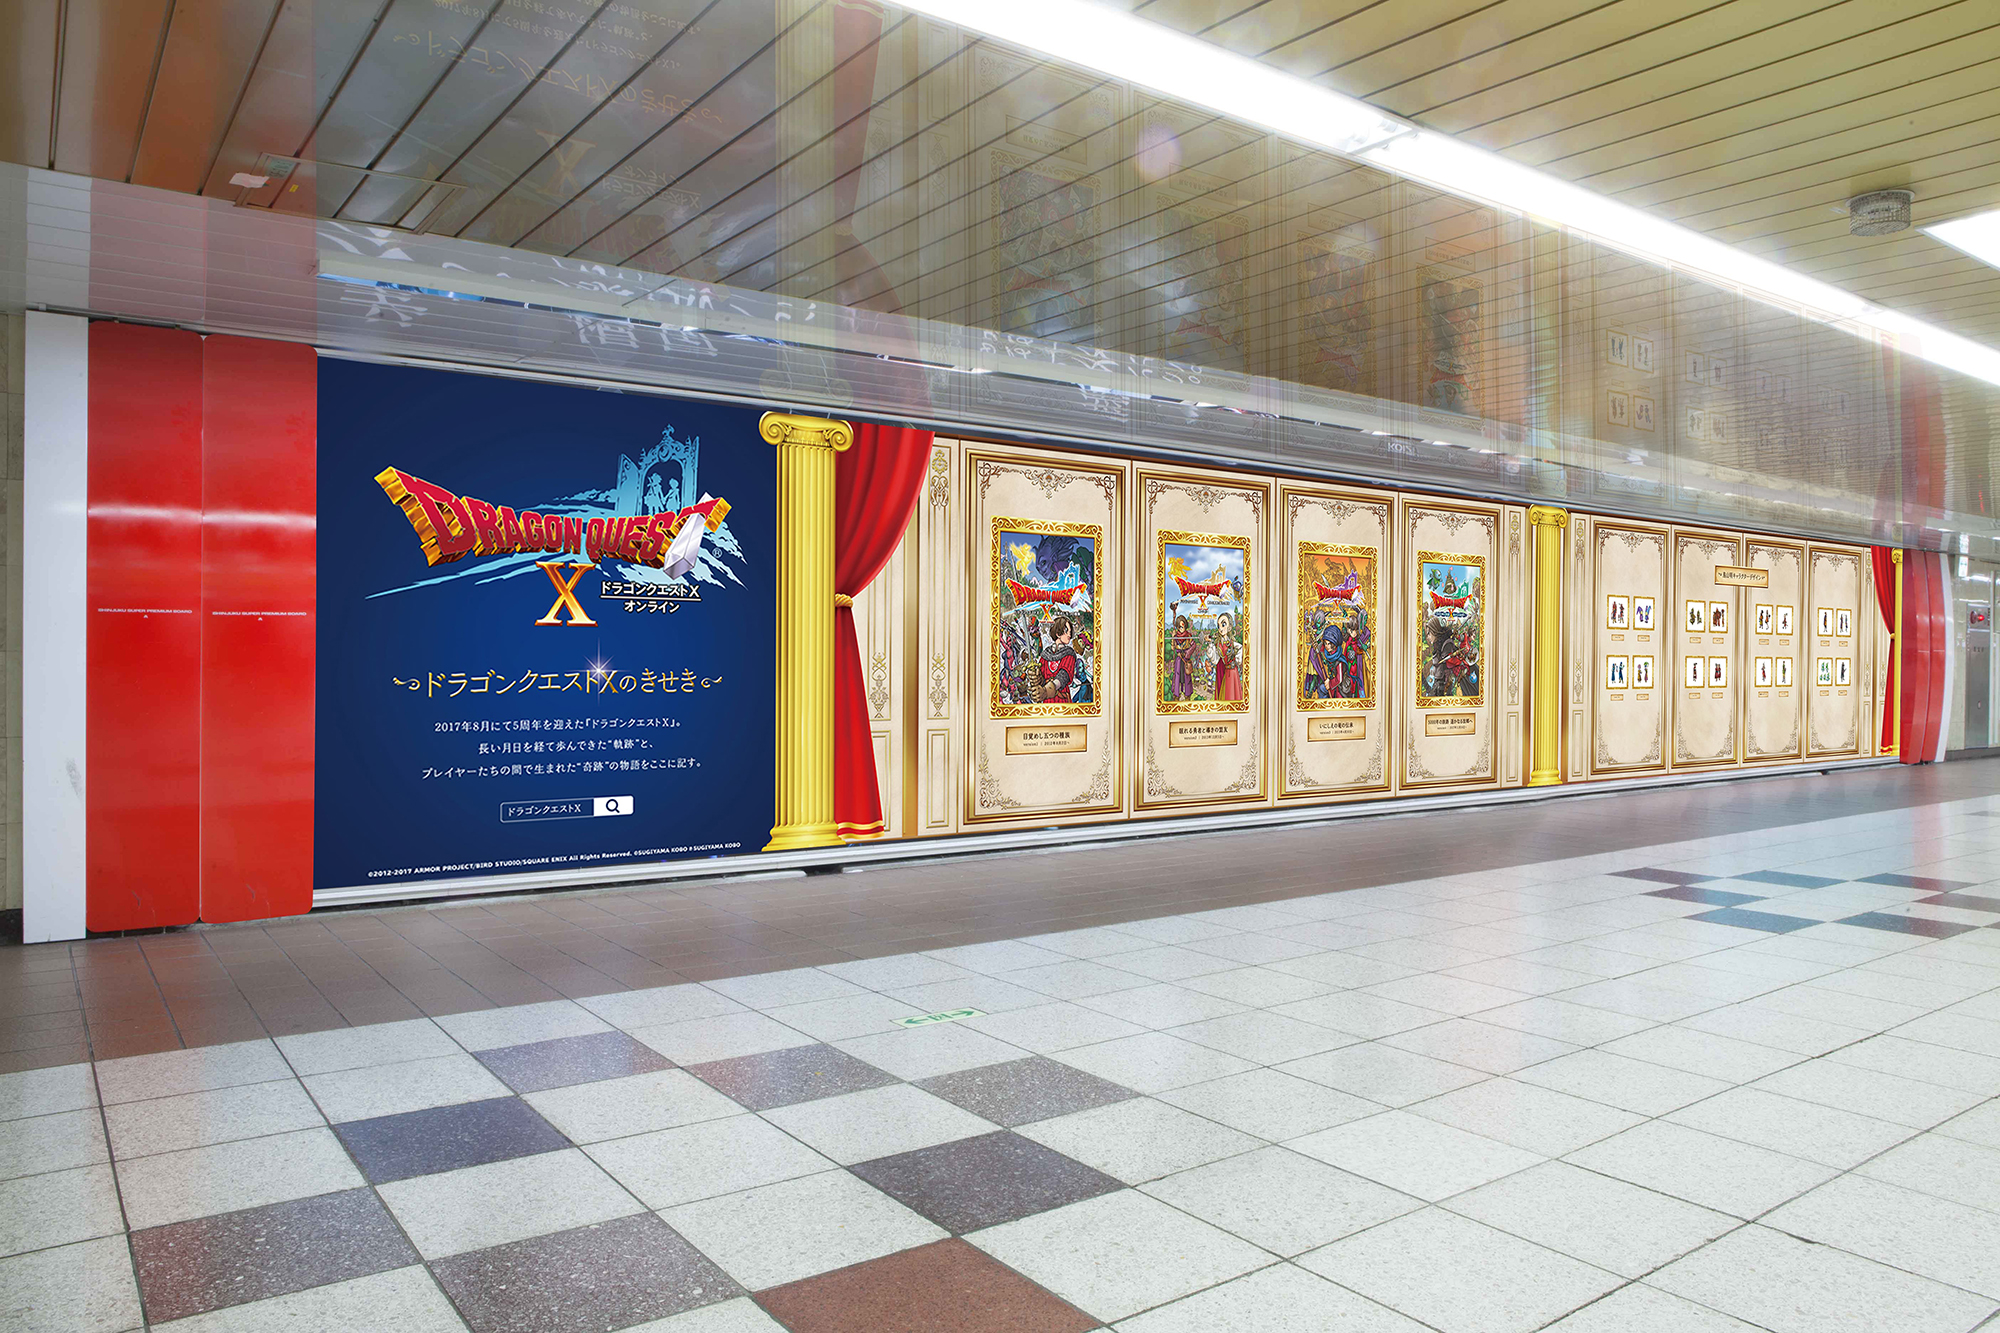 丸の内線新宿駅に「ドラゴンクエストX」体験型広告の登場が決定